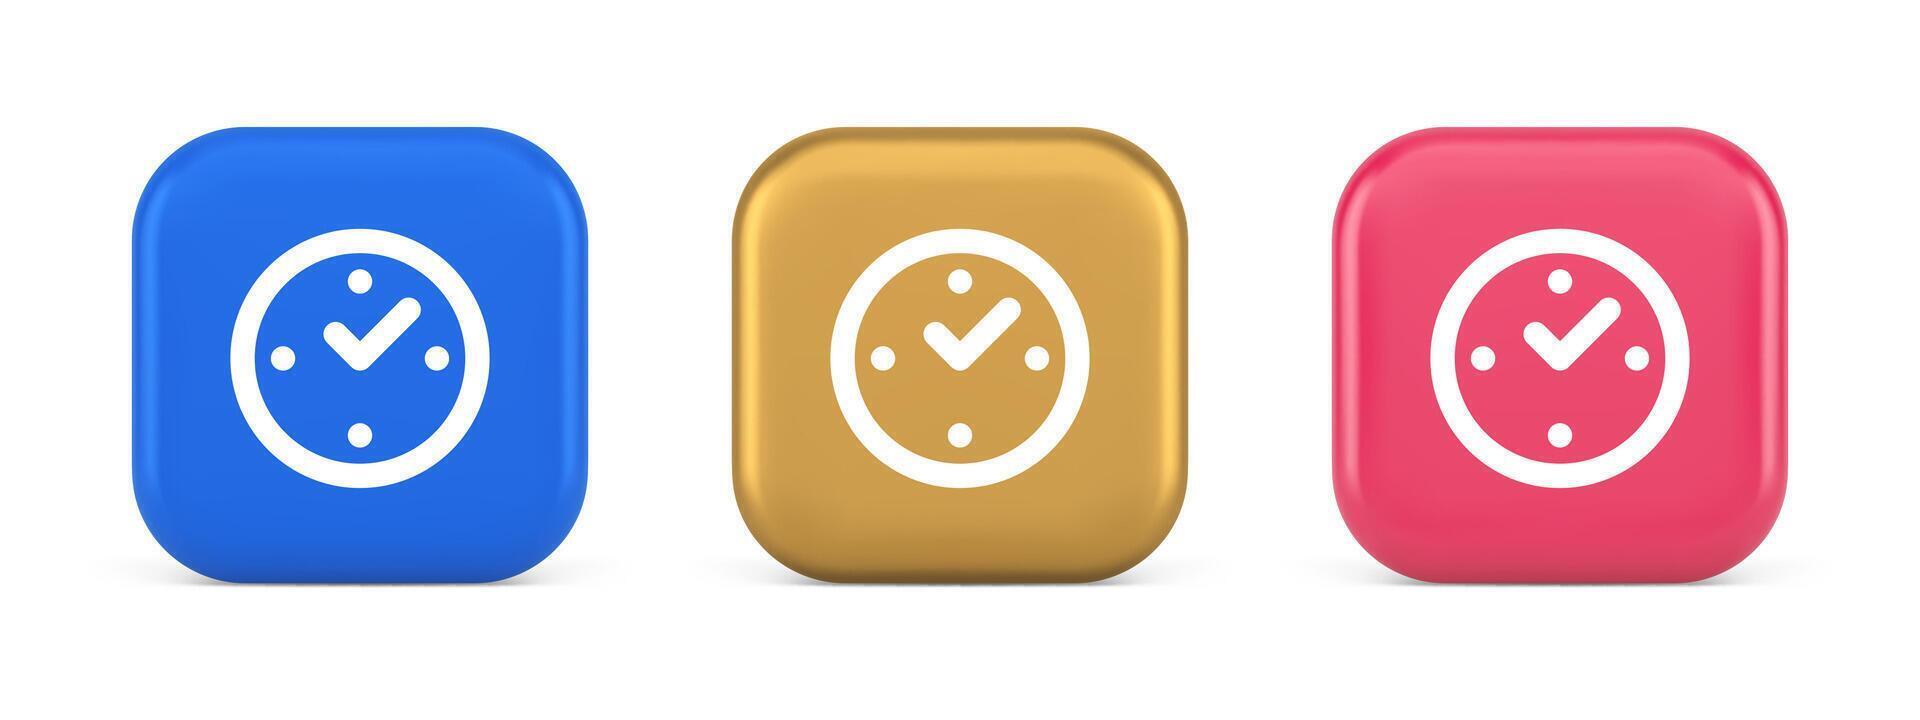 regarder temps contrôle bouton alarme l'horloge date limite vérification la toile app conception 3d réaliste icône vecteur